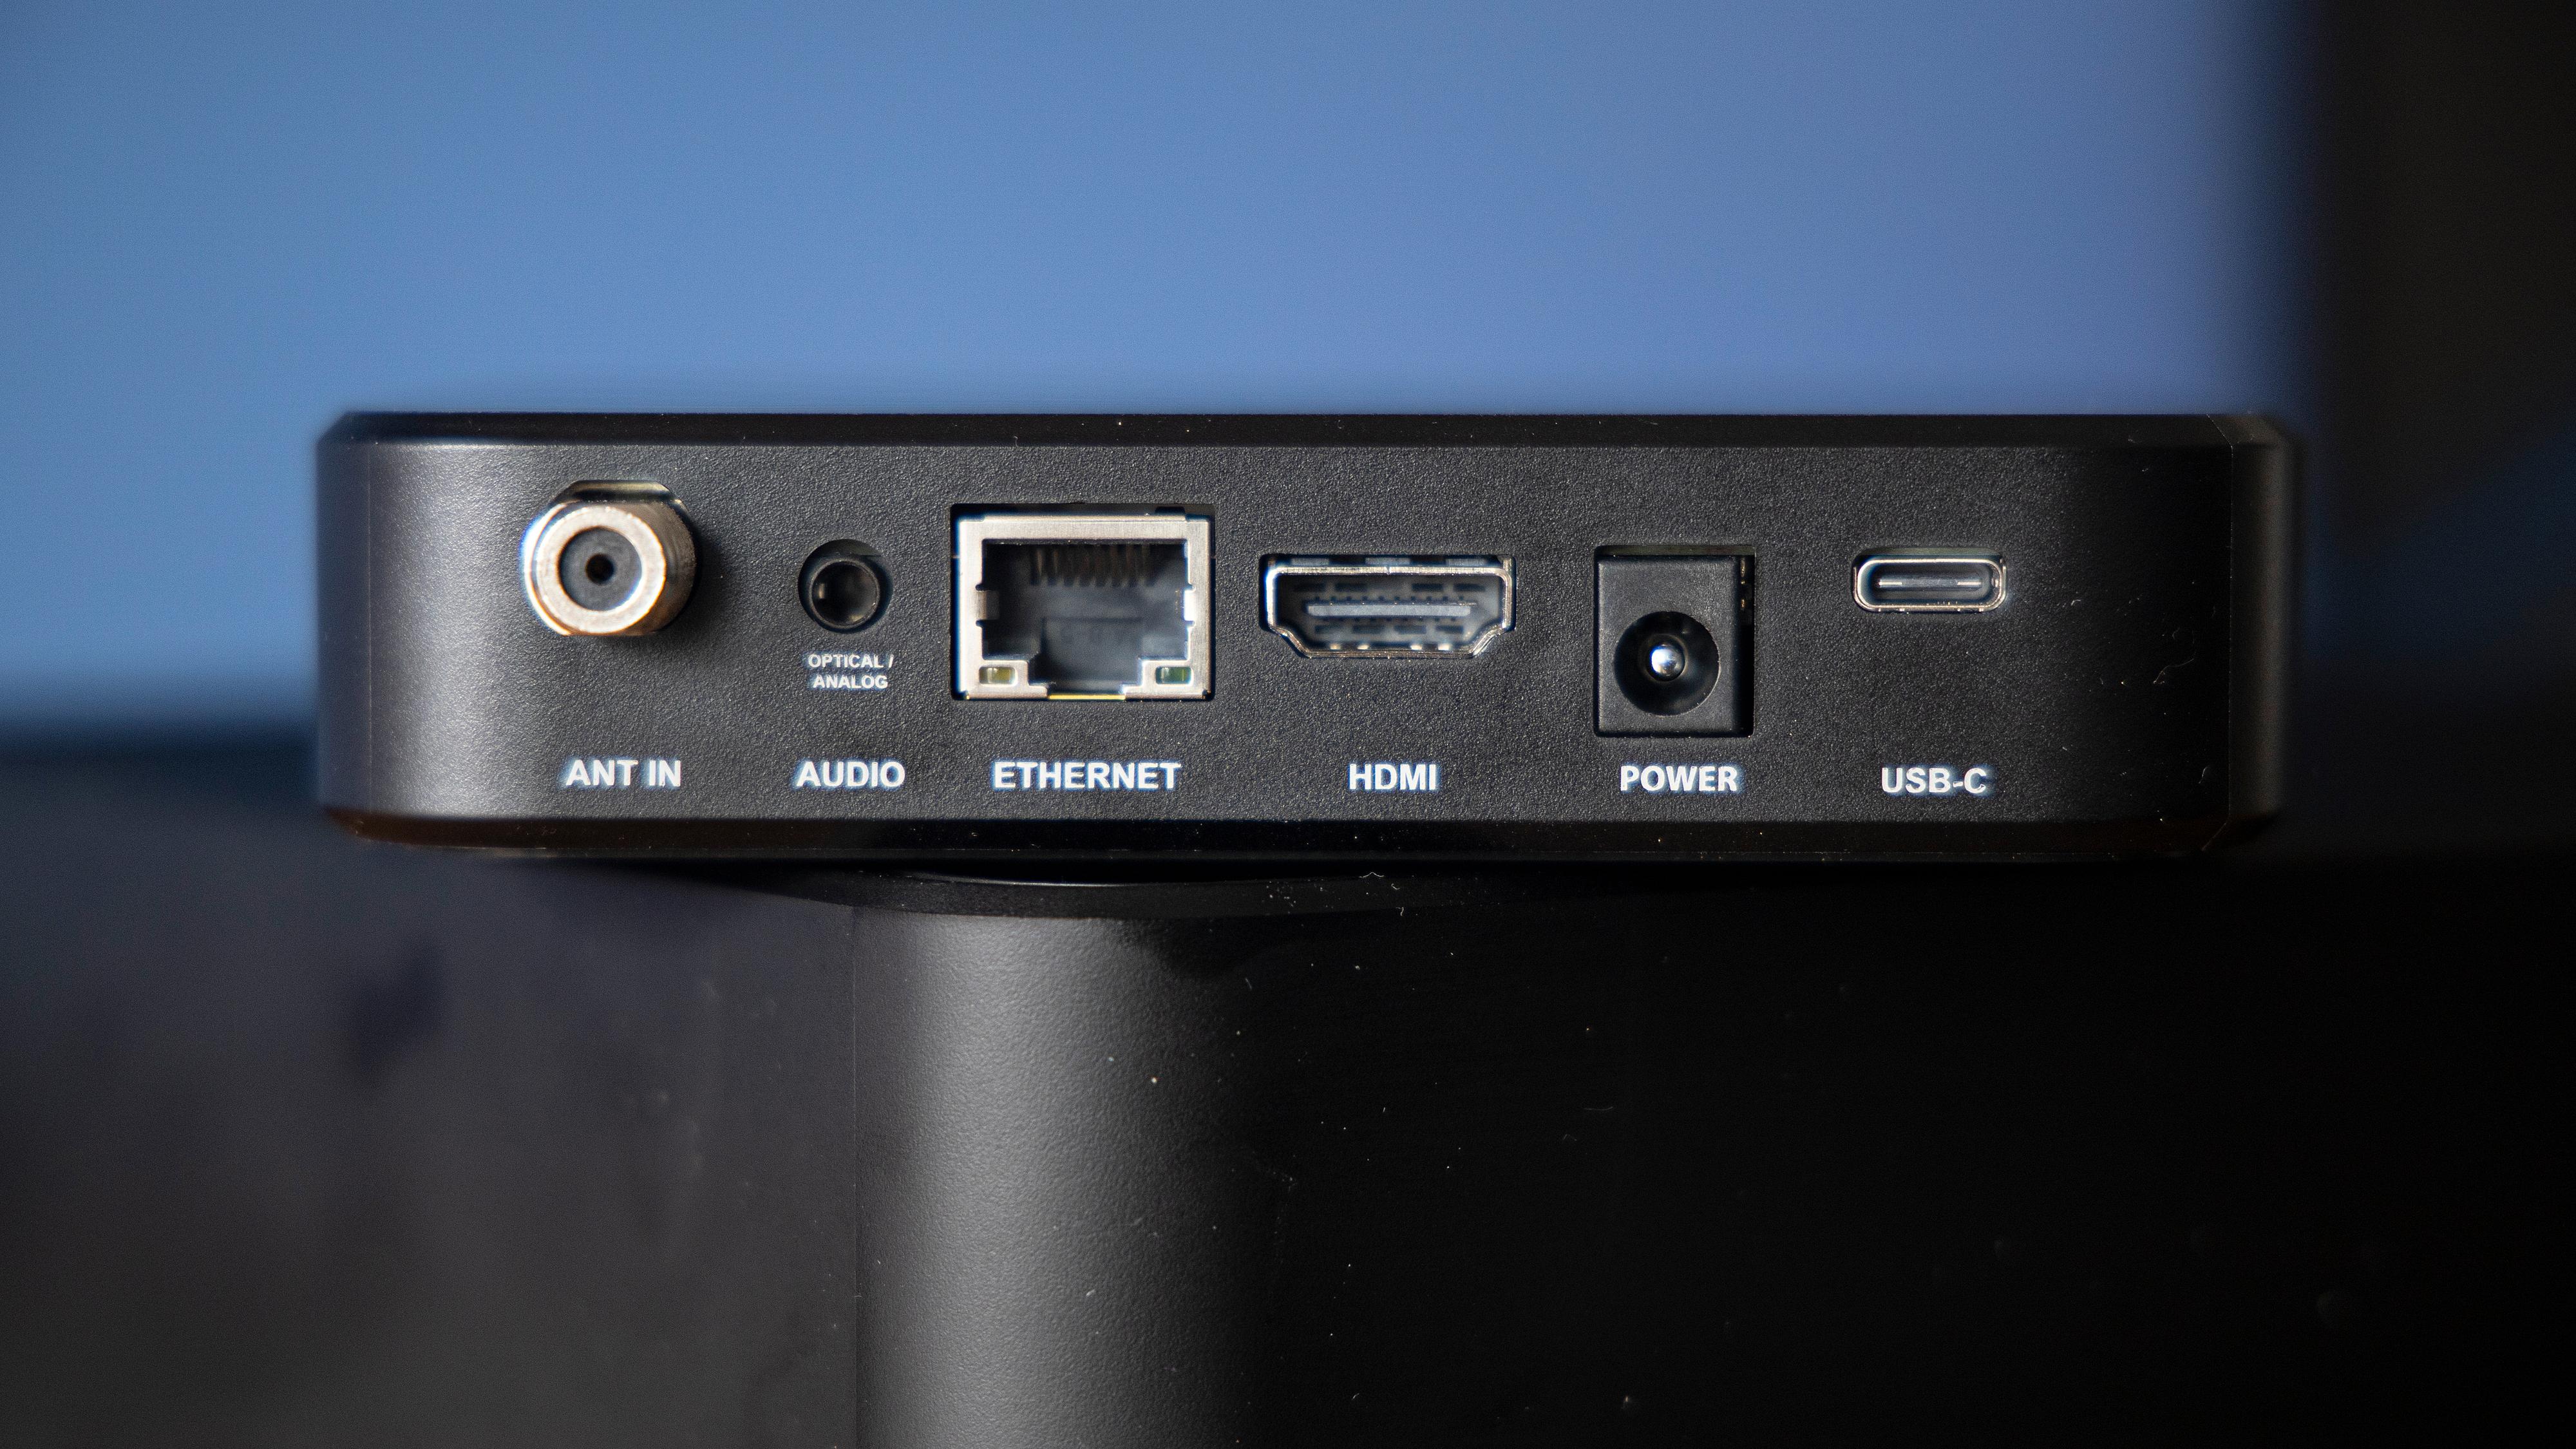 Bak finner vi antenneinngang, optisk/analog lyd, ethernet, HDMI, strøm og en USB-port.